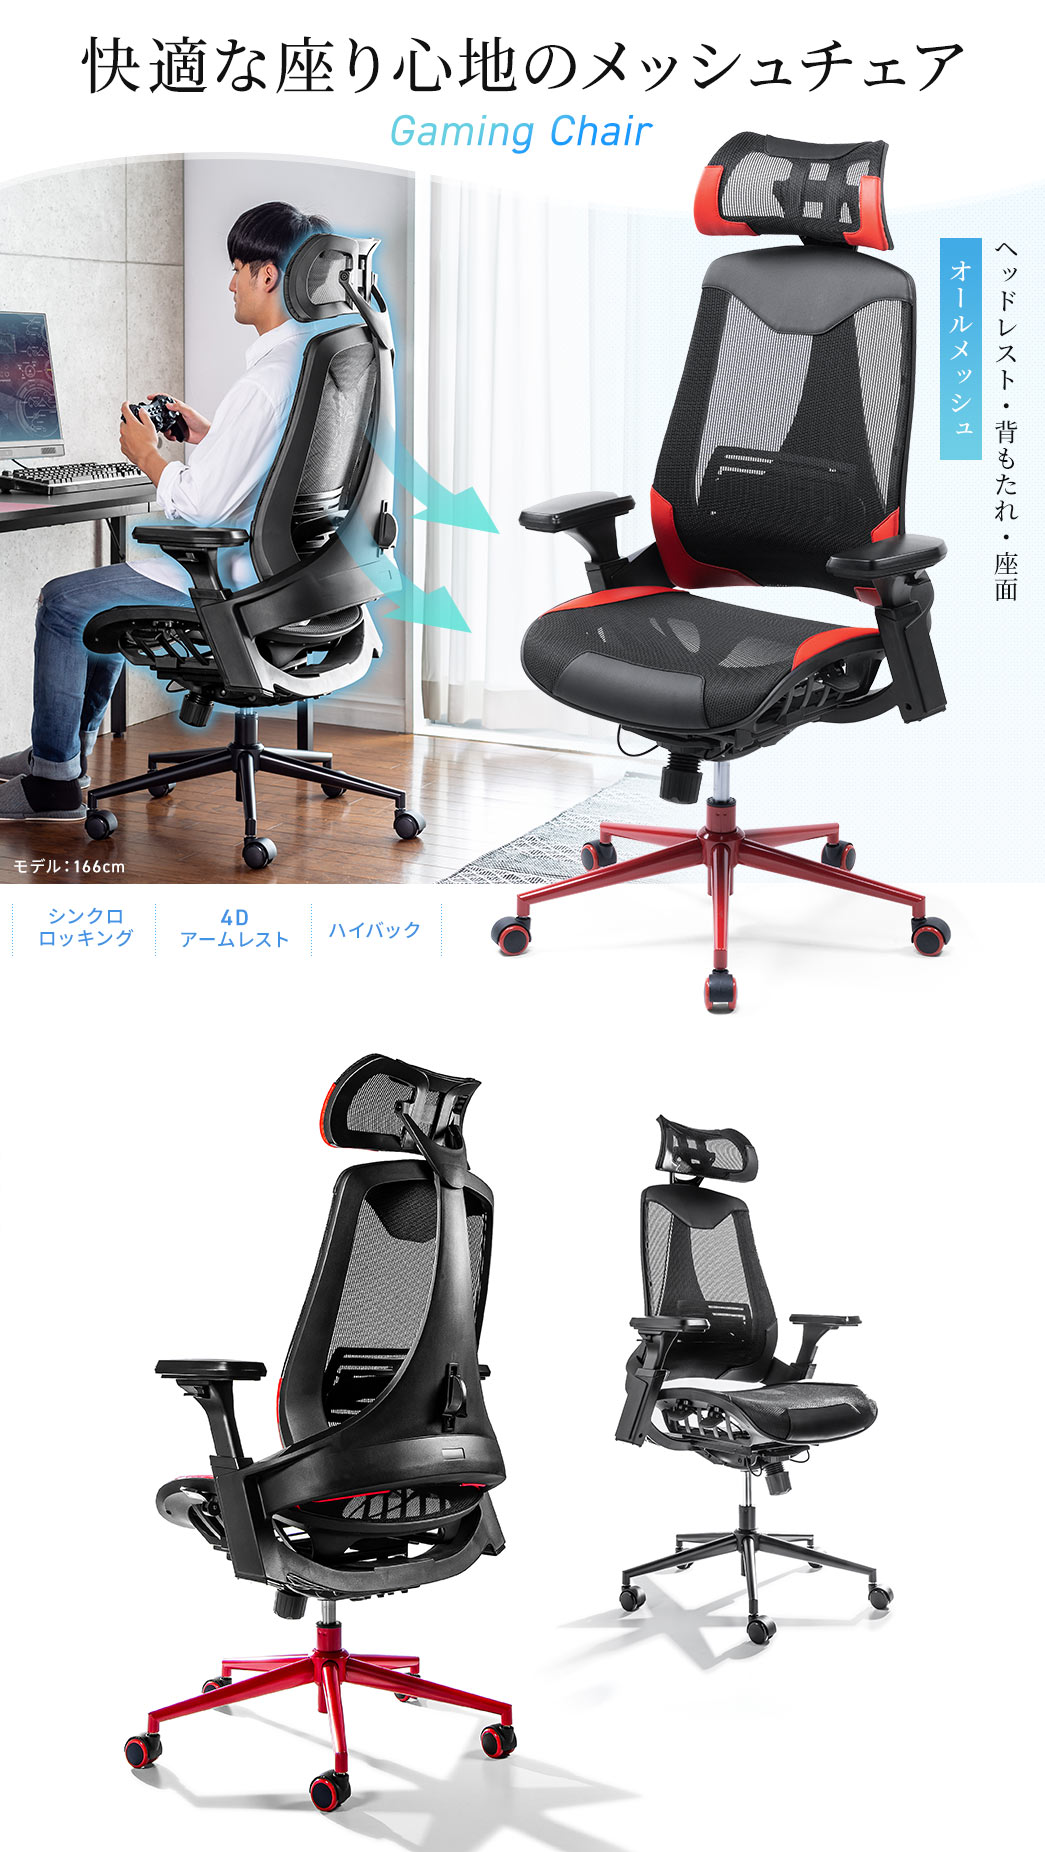 I[V[YKɍ Gaming Chair